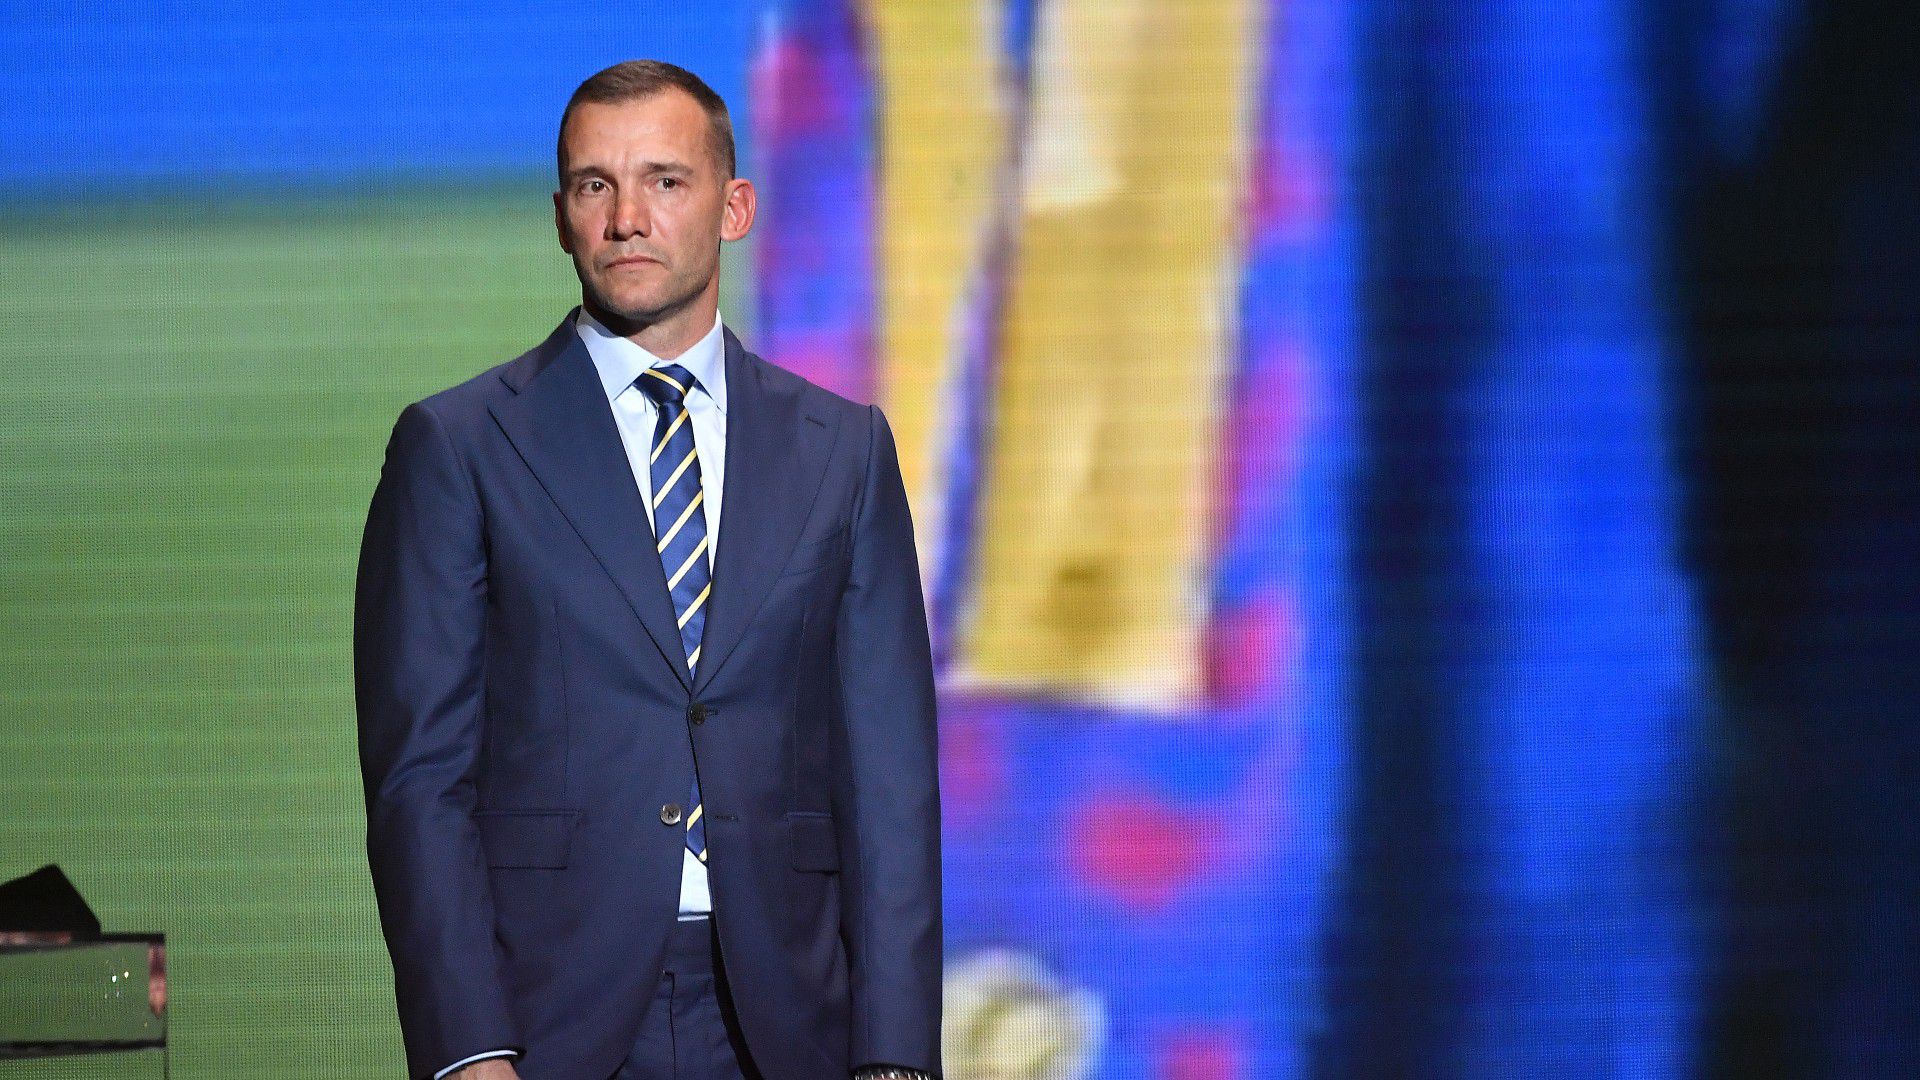 Hihetetlen: Mindössze egy napig volt az alelnöke az Ukrán Olimpiai Bizottságnak Andrij Sevcsenko